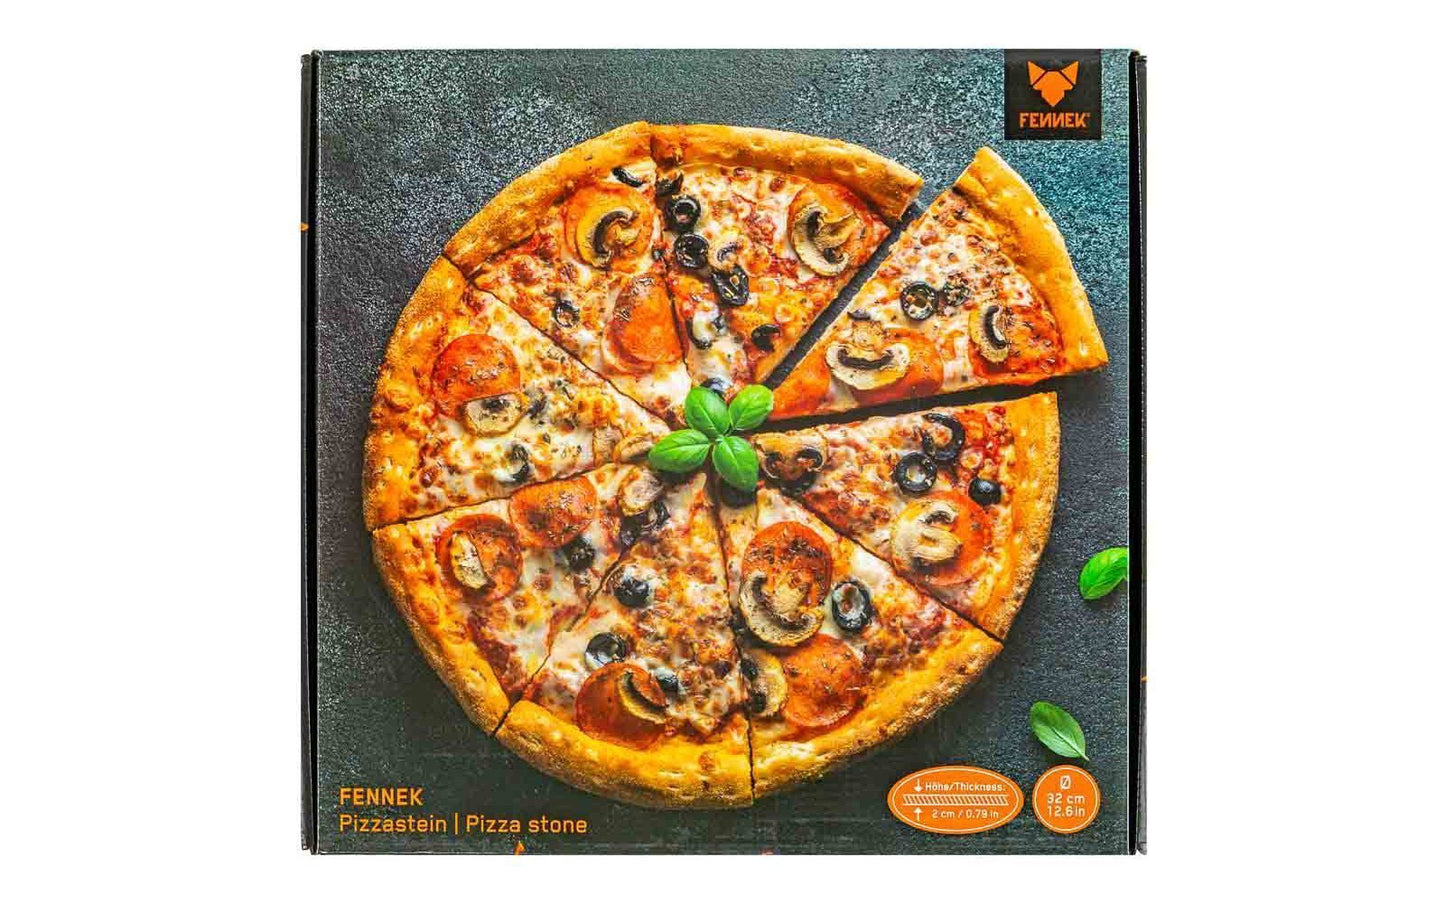 Draufsicht auf die Produktverpackung des Pizzastein, einem mit einer leckeren Pizza bedruckten Karton.